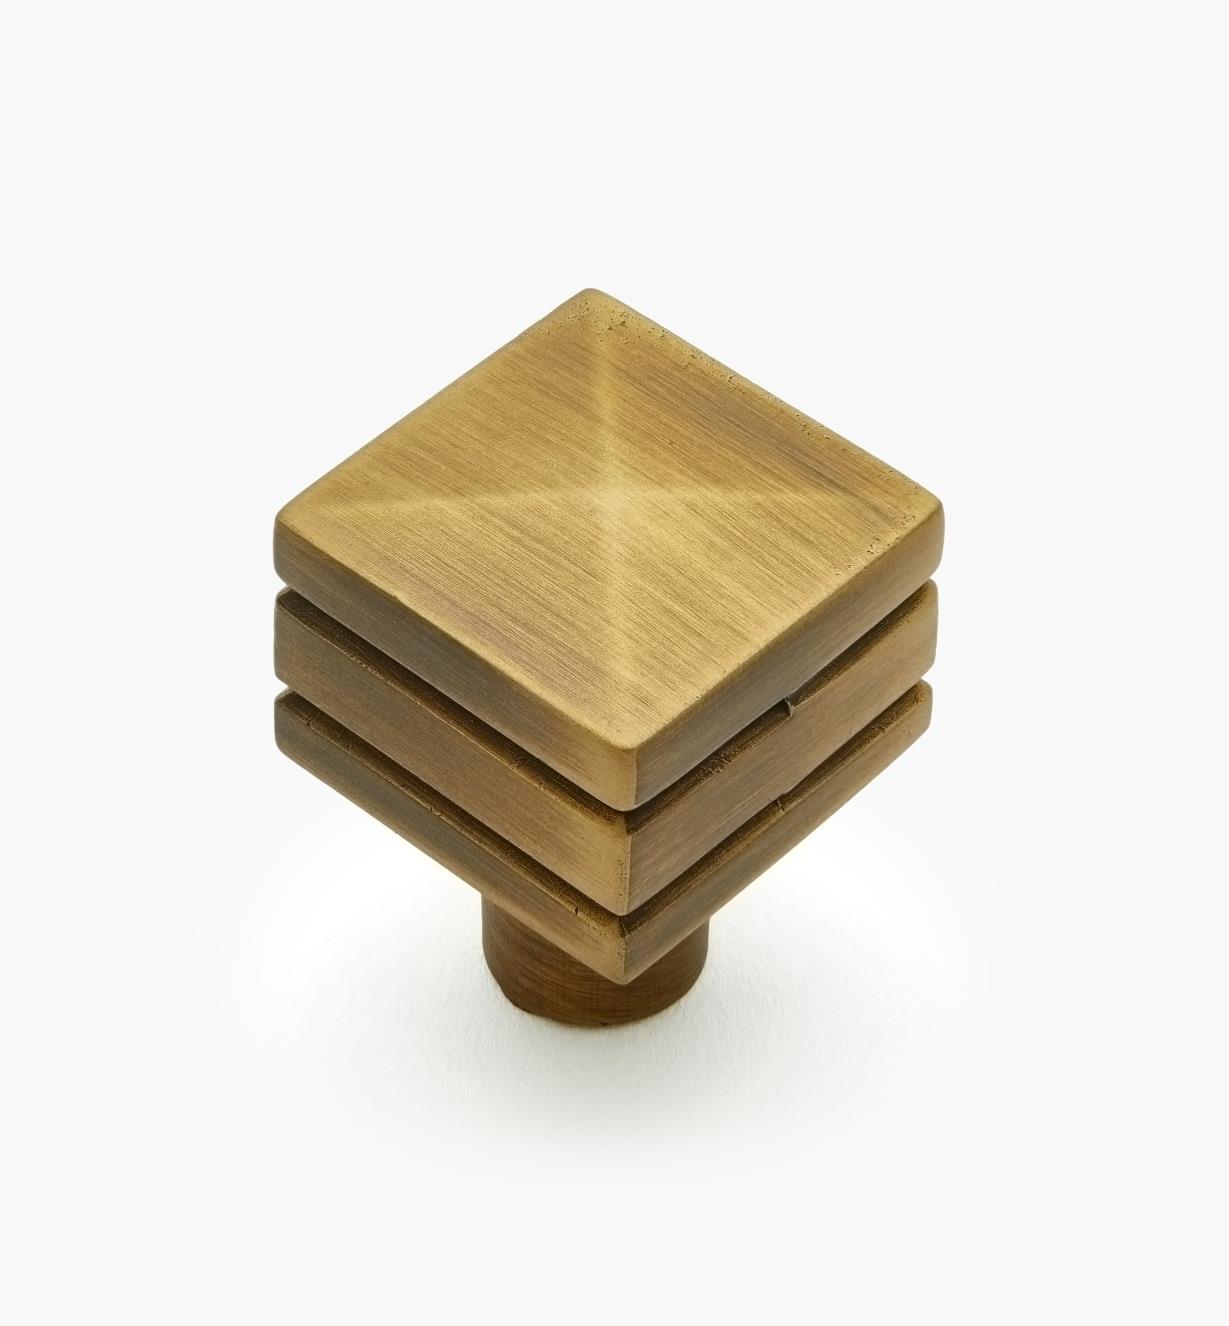 02W4021 - Bouton carré de 7/8 po x 1 1/4 po, série Cube, fini laiton antique